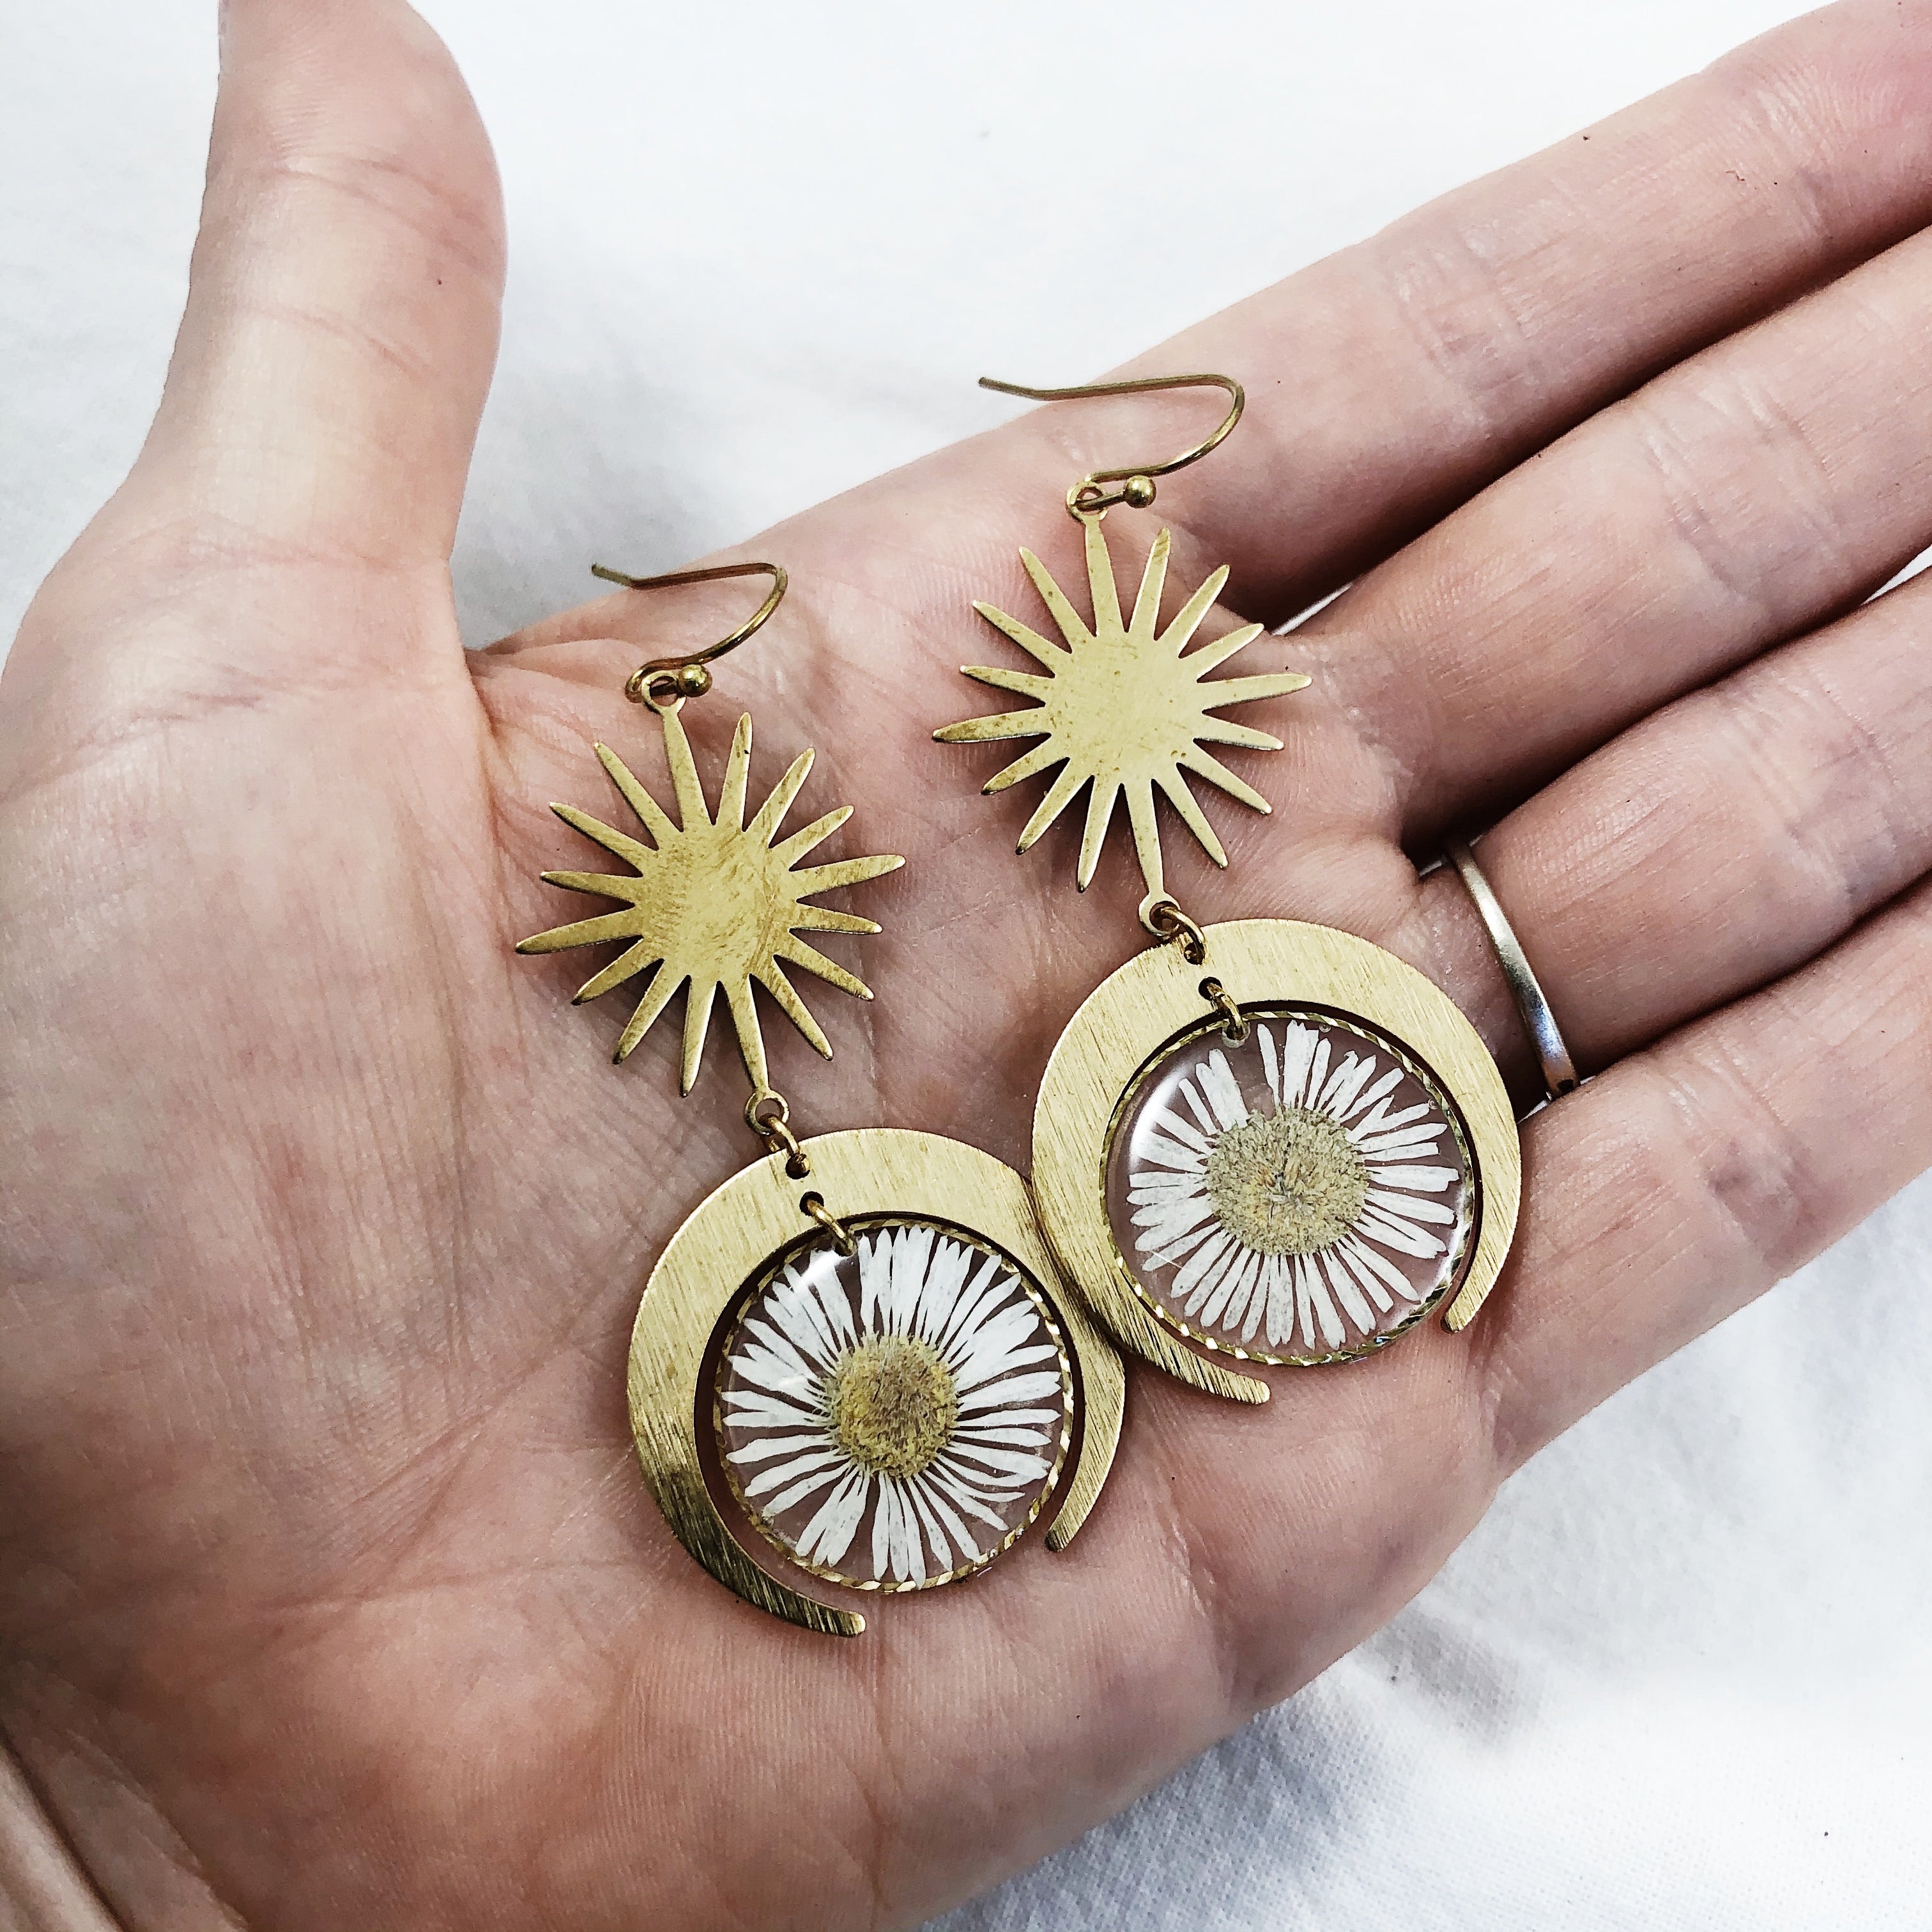 Handmade Witch Jewelry Earring Mystical Sun Dangle Earrings For Women Girl  - AliExpress